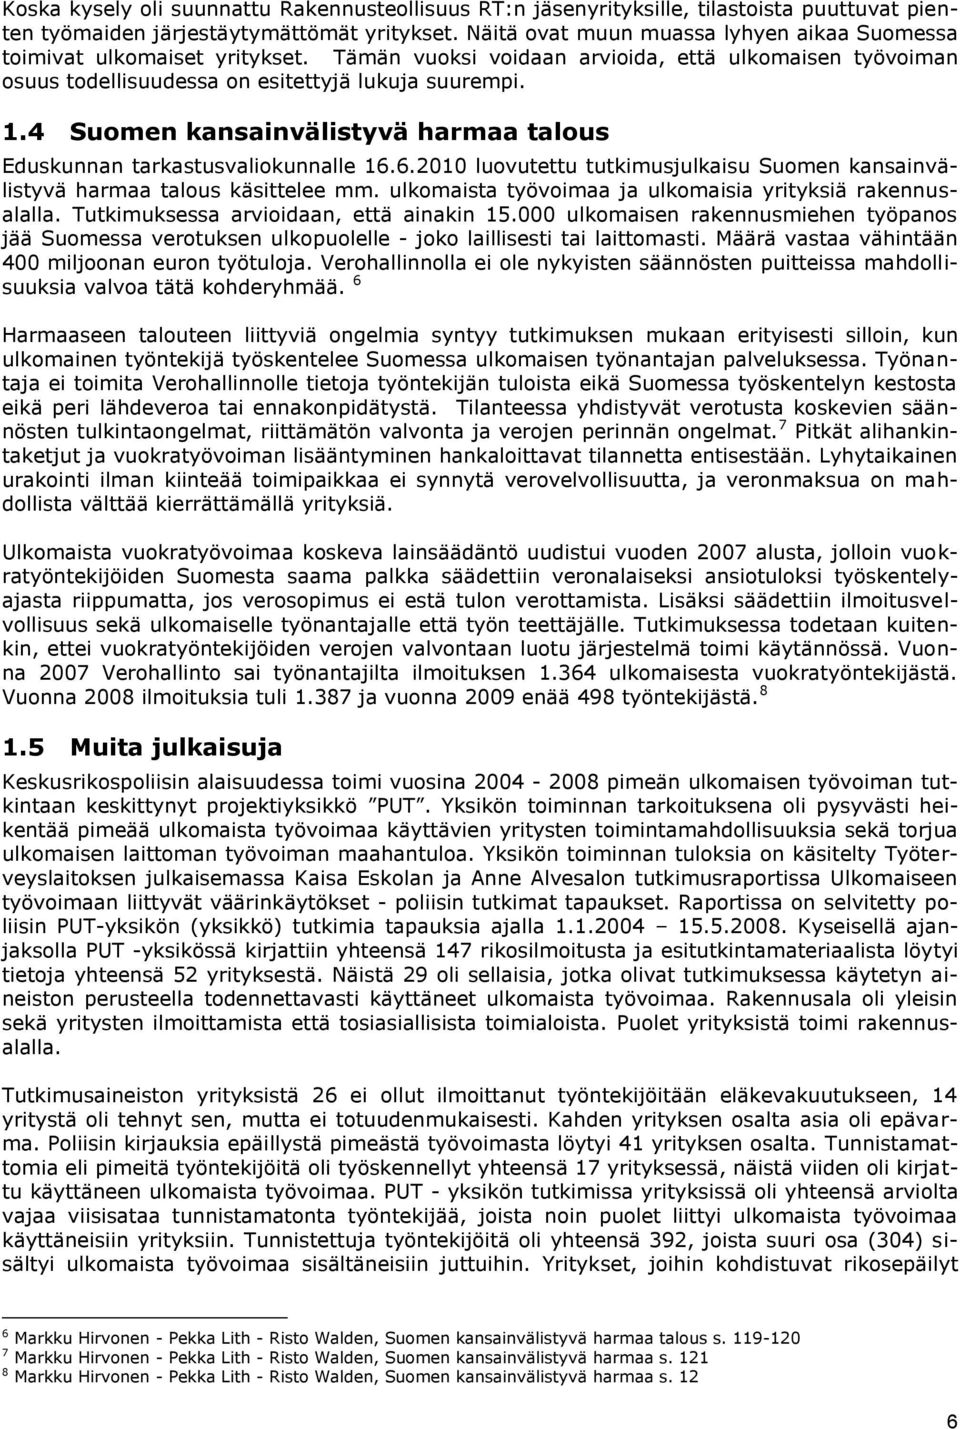 4 Suomen kansainvälistyvä harmaa talous Eduskunnan tarkastusvaliokunnalle 16.6.2010 luovutettu tutkimusjulkaisu Suomen kansainvälistyvä harmaa talous käsittelee mm.